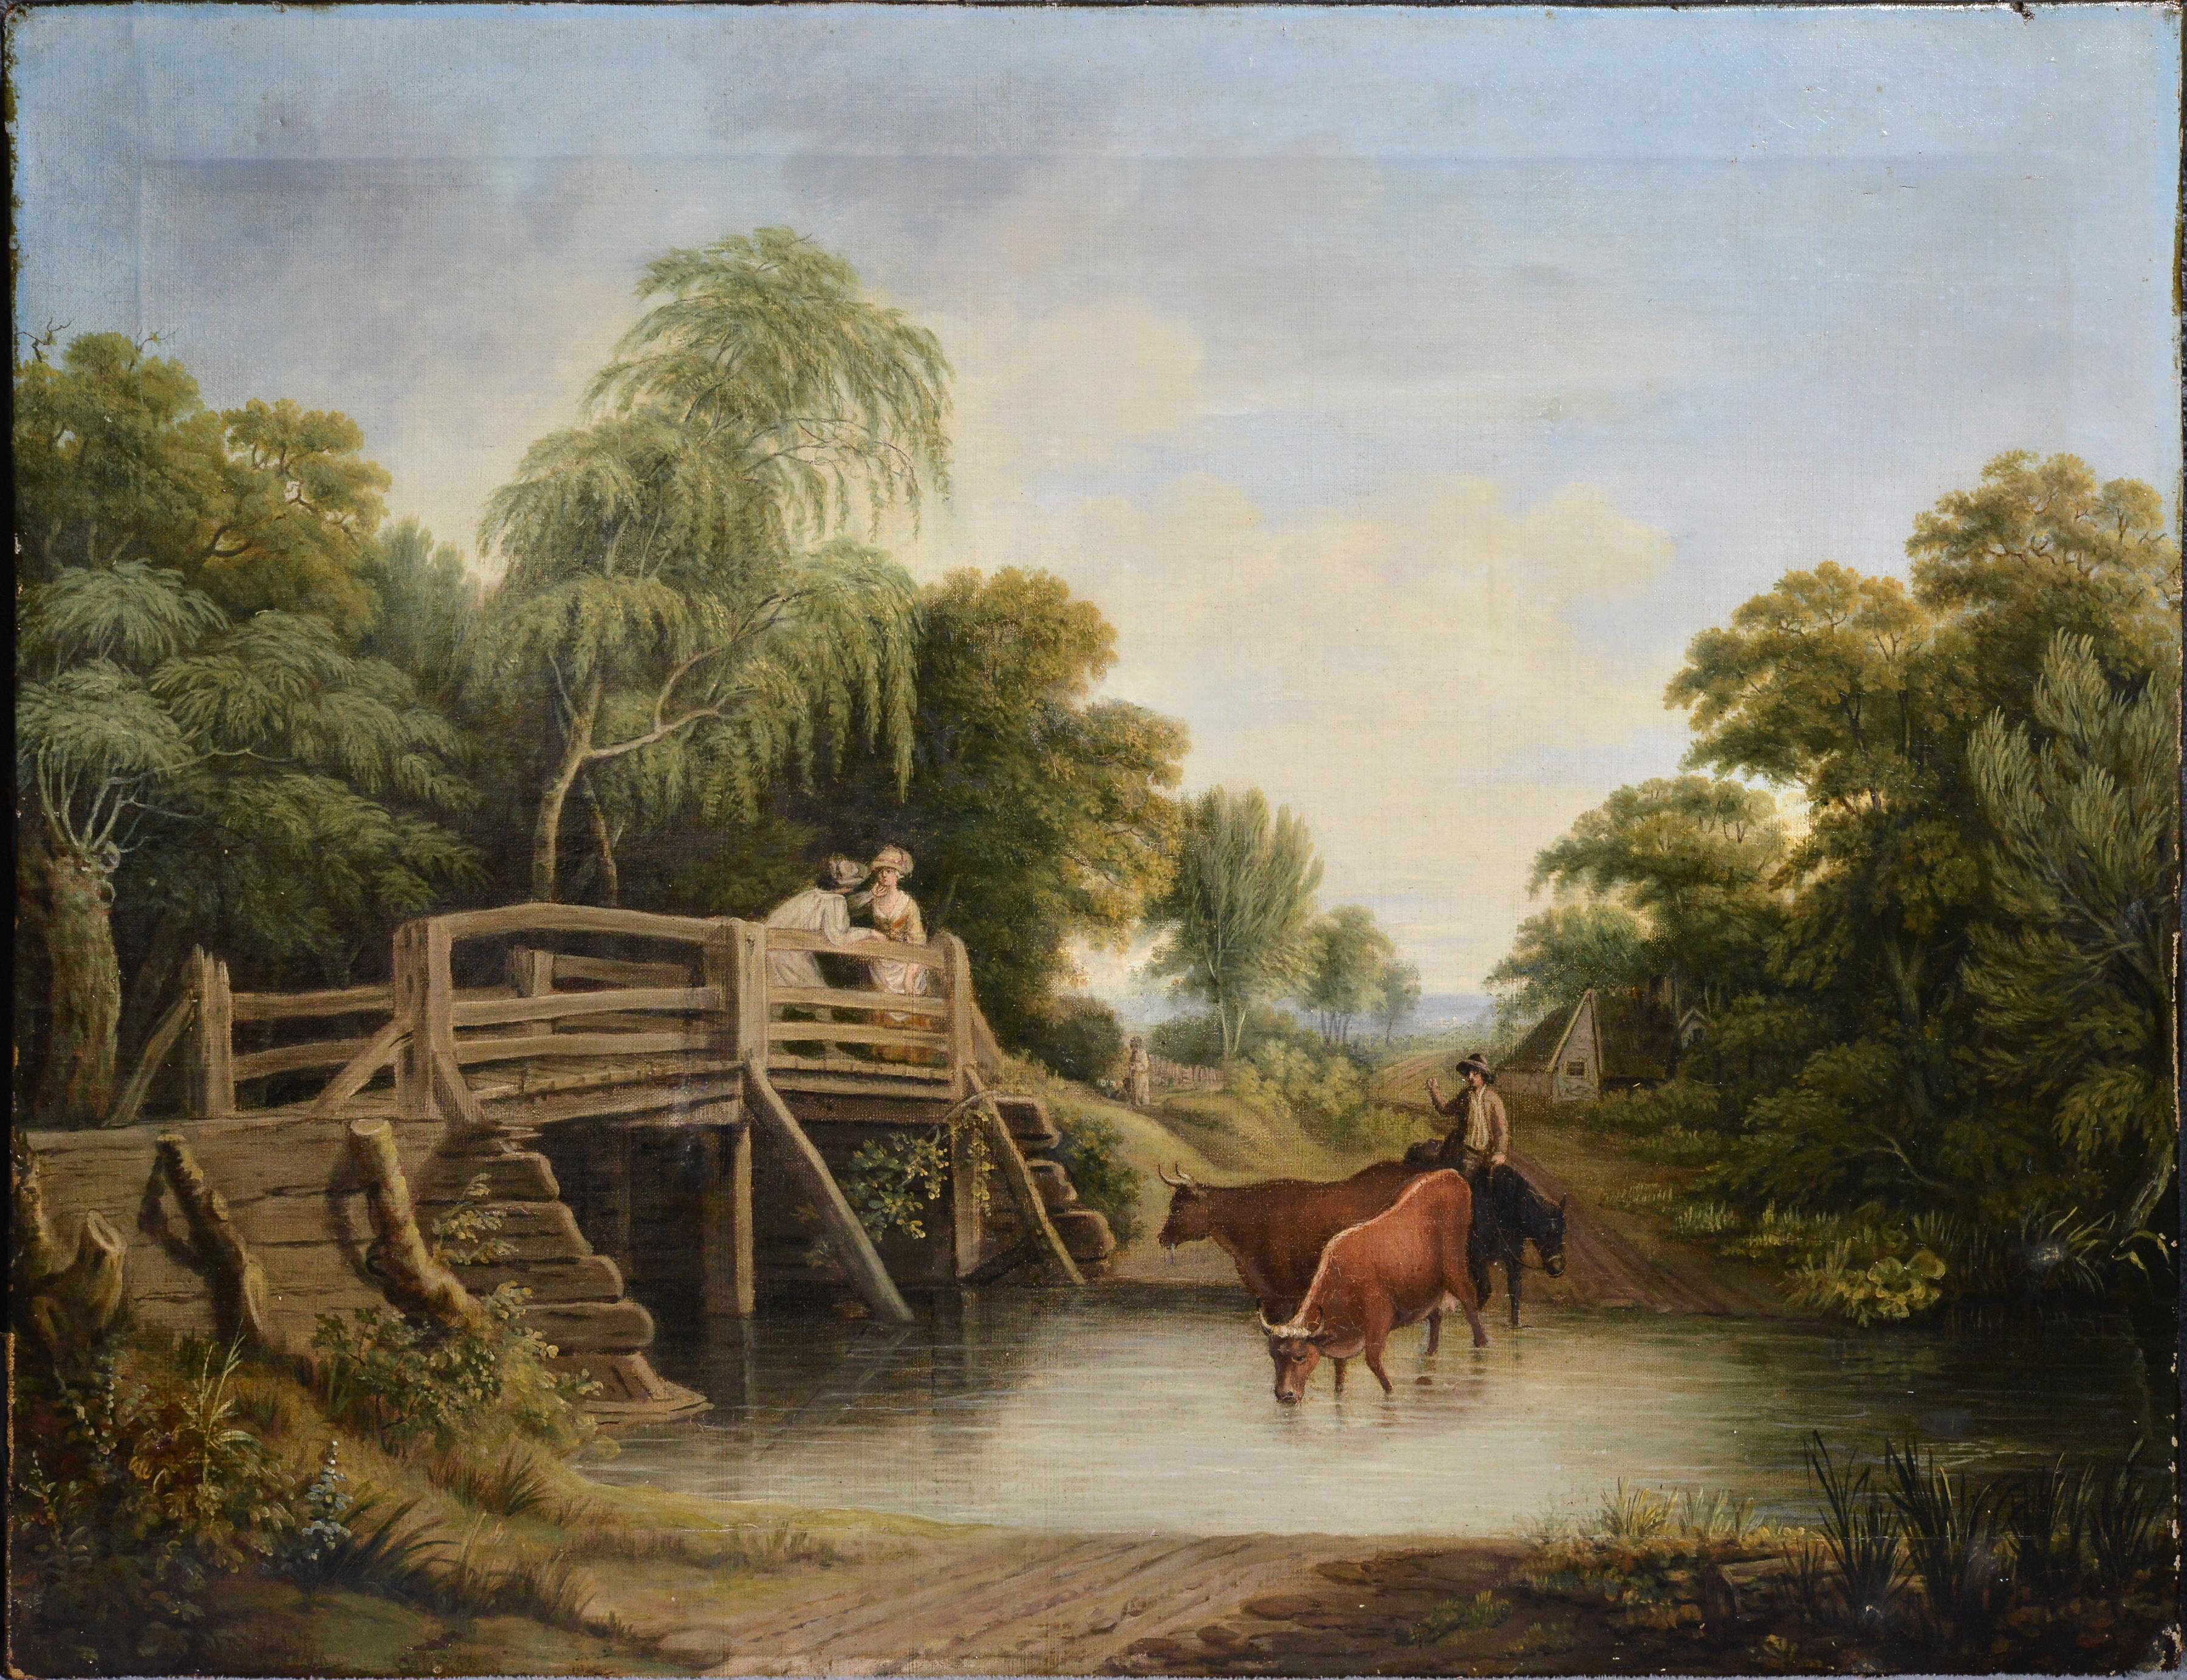 Unknown Figurative Painting – Pastoral Landscape Meeting on Bridge, Ölgemälde auf Leinwand, frühes 19. Jahrhundert